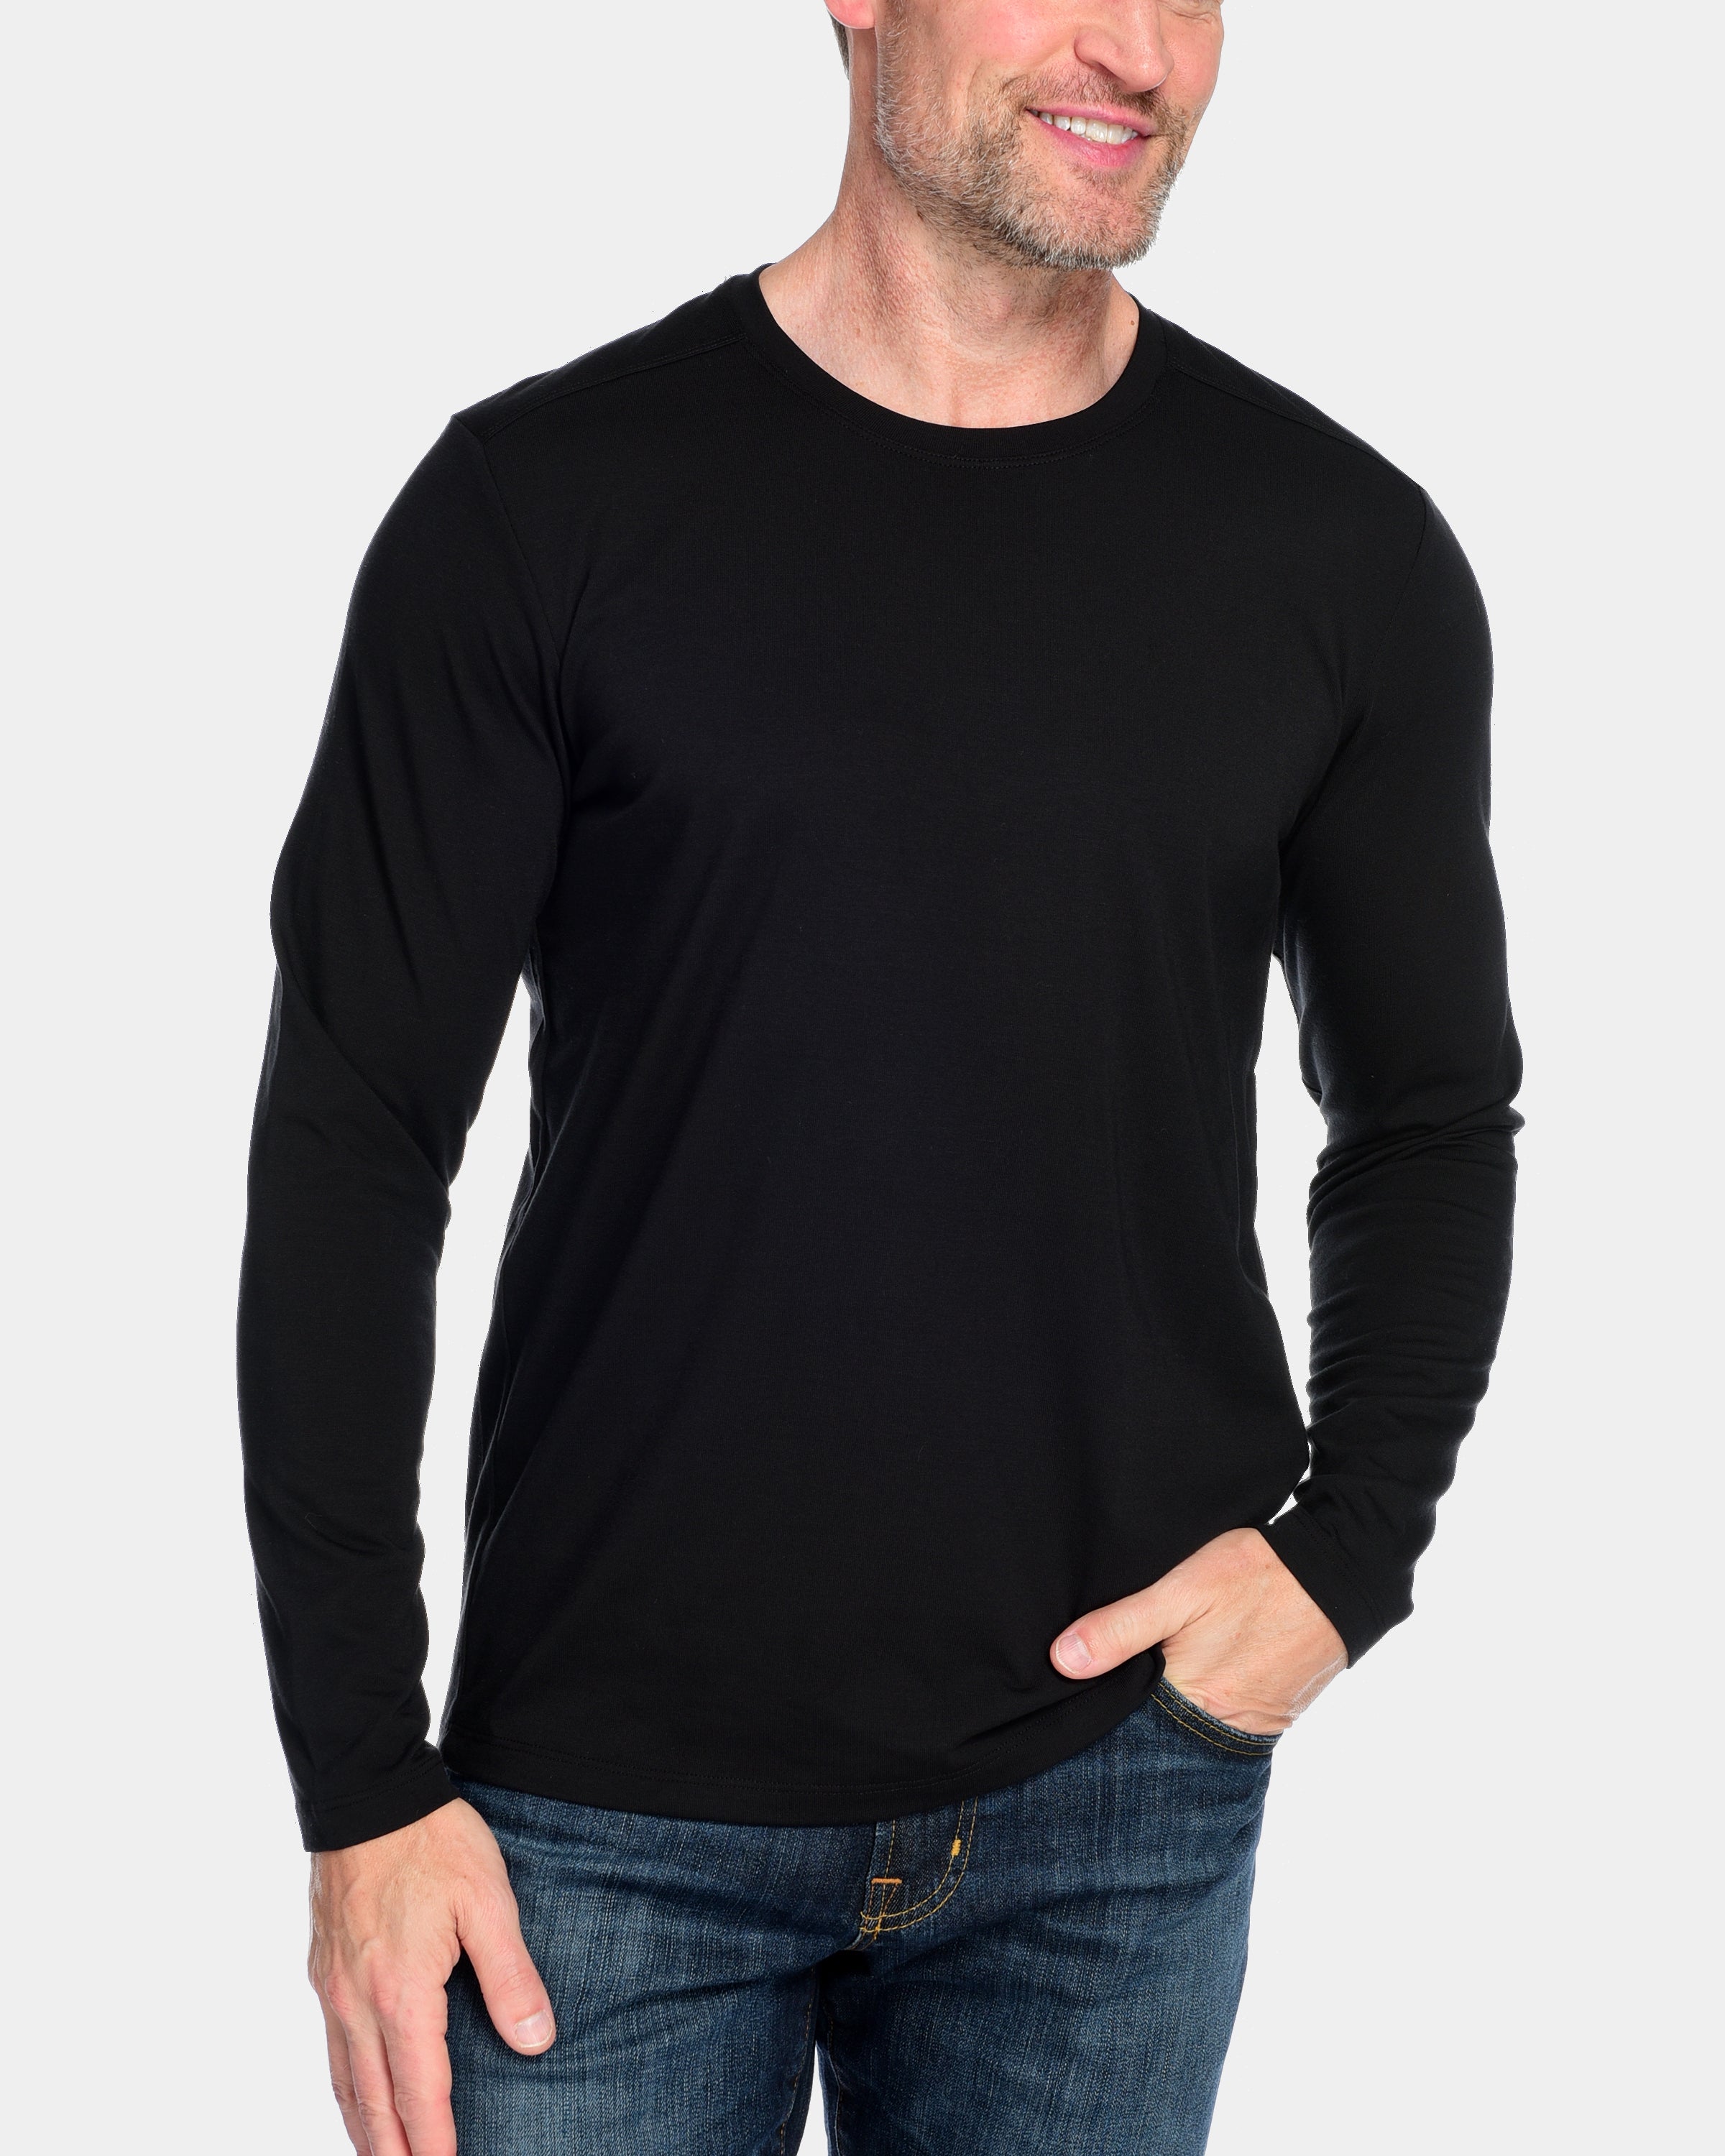 Fisher + Baker Men's Everyday Long-Sleeve T-Shirt, Black, Men's, S, Shirts Tops Long-Sleeve T-shirts Tees